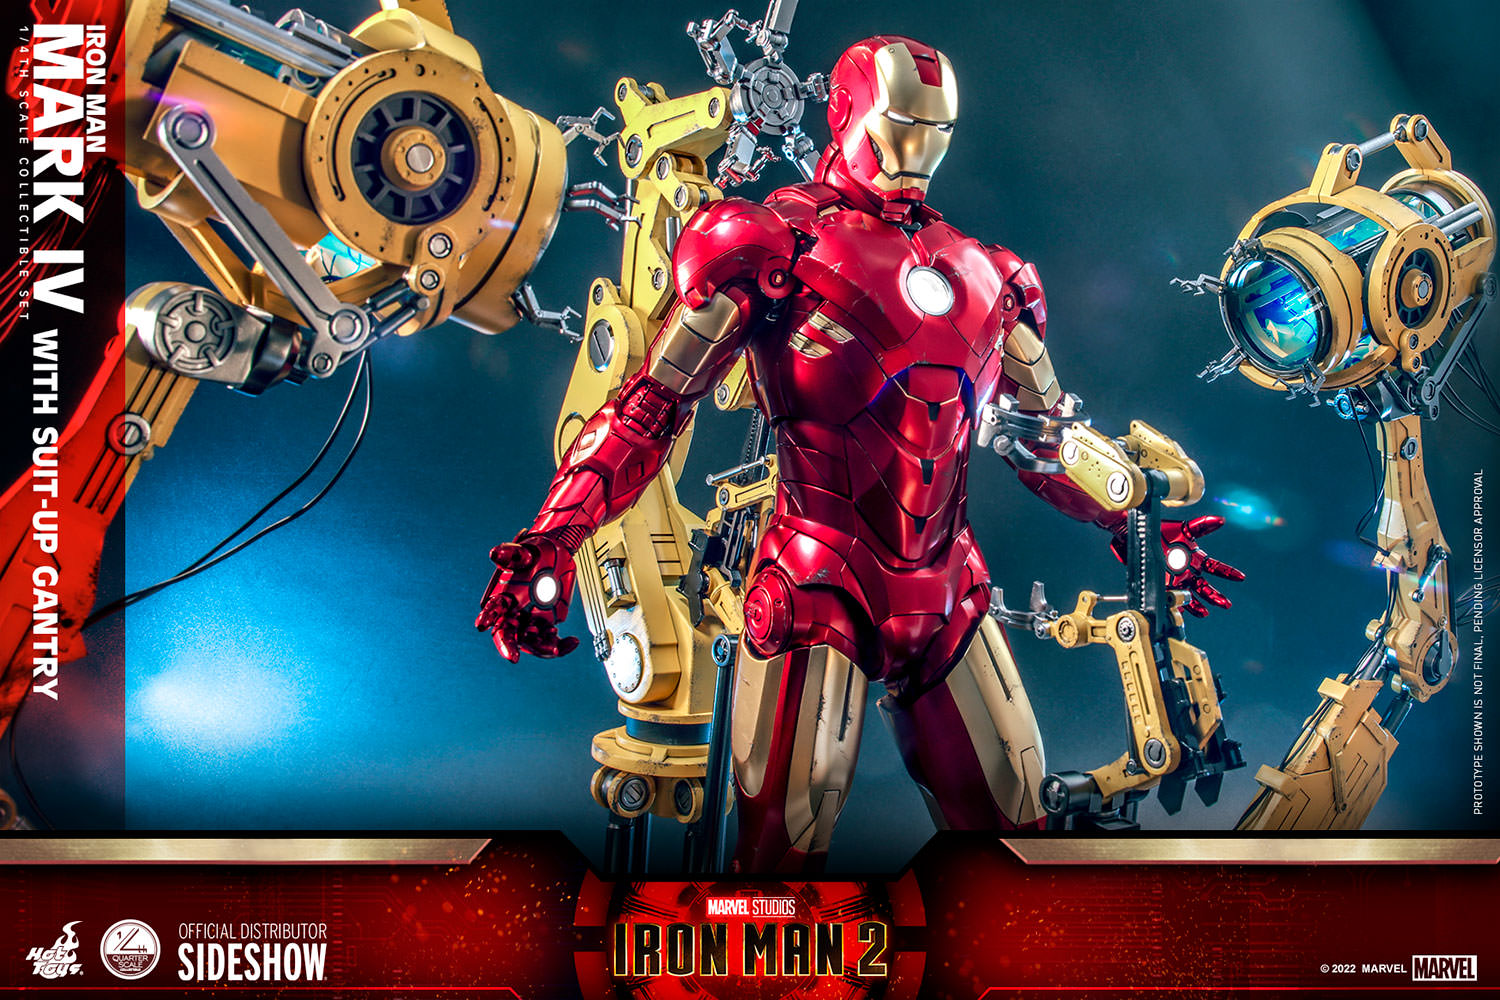 Hot Toys Iron Man 2 Iron Man Mark IV With Suit-Up Gantry